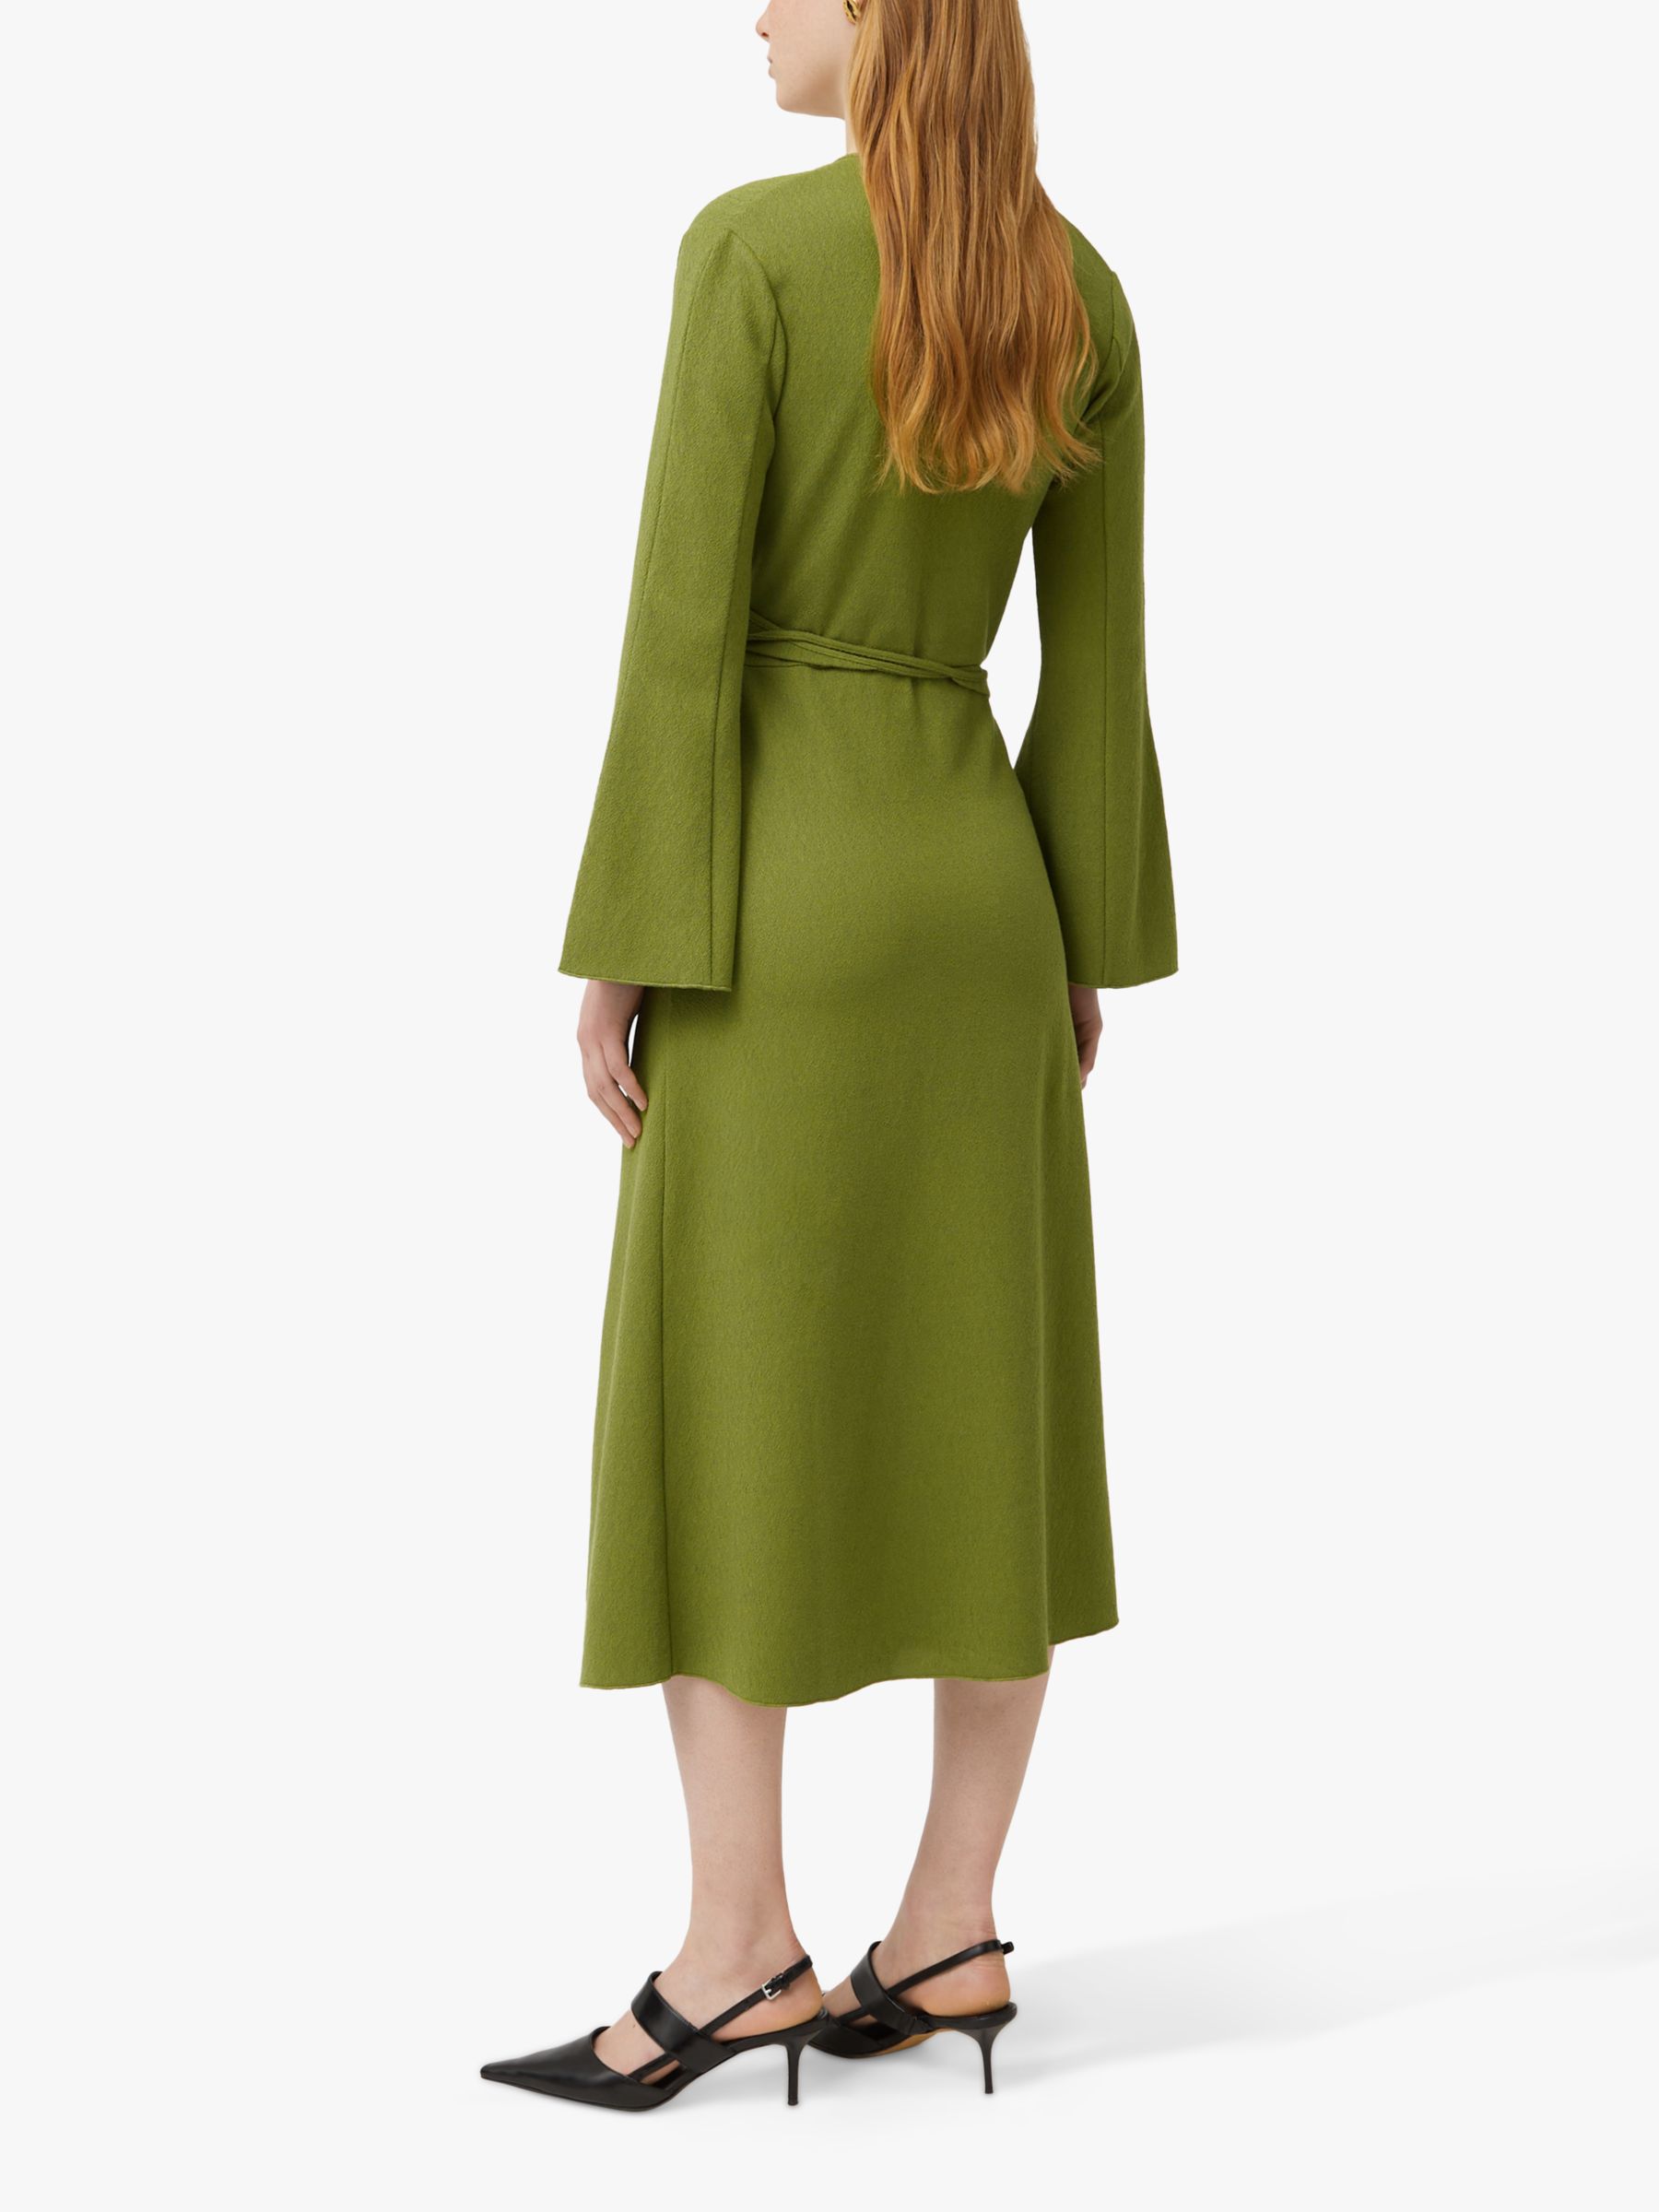 Jigsaw Textured Jersey Wrap Dress, Green, M